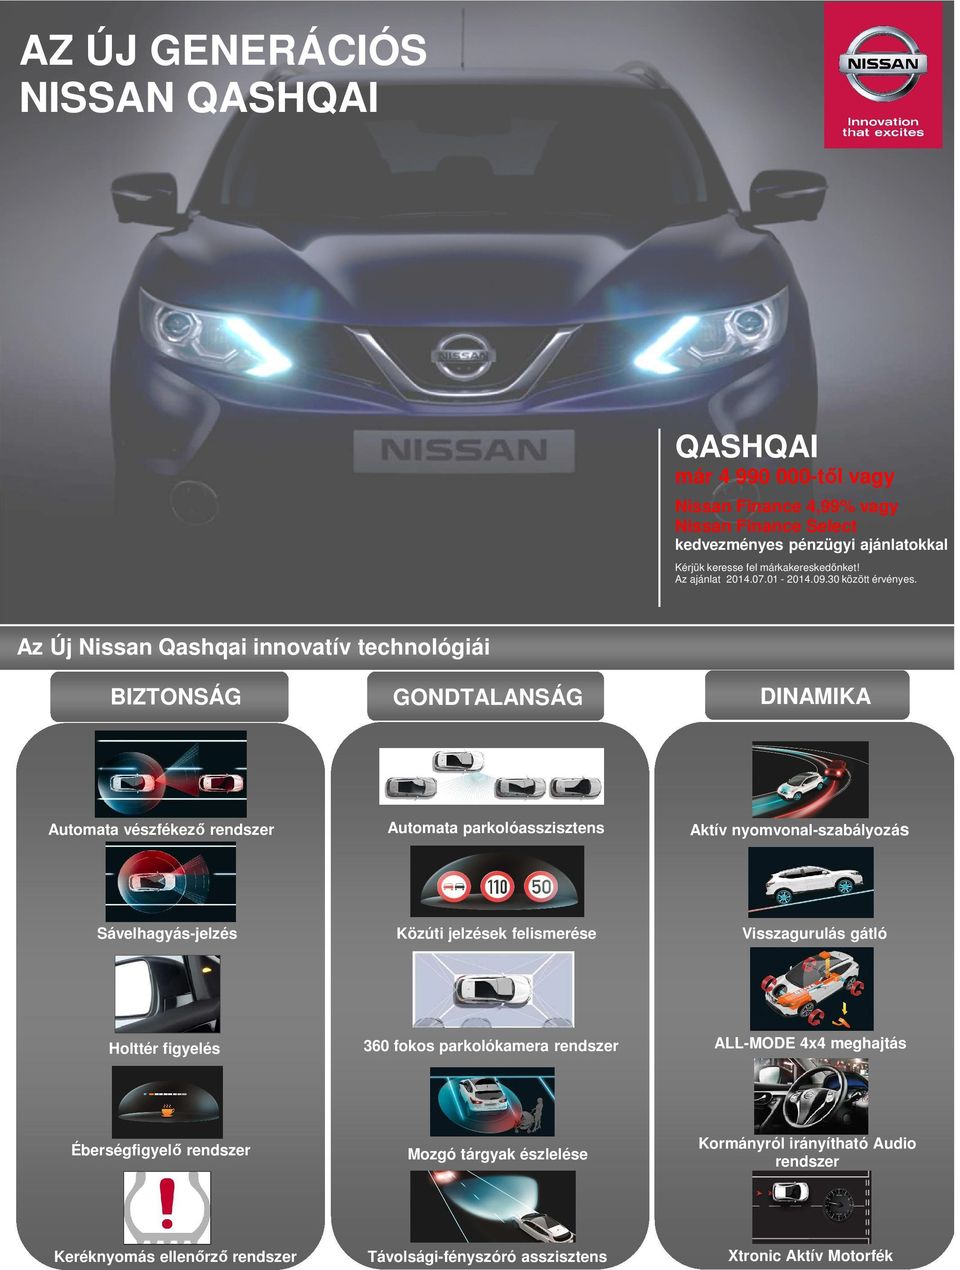 Az Új Nissan Qashqai innovatív technológiái BIZTONSÁG Automata vészfékező rendszer Sávelhagyás-jelzés Holttér figyelés Éberségfigyelő rendszer Keréknyomás ellenőrző rendszer